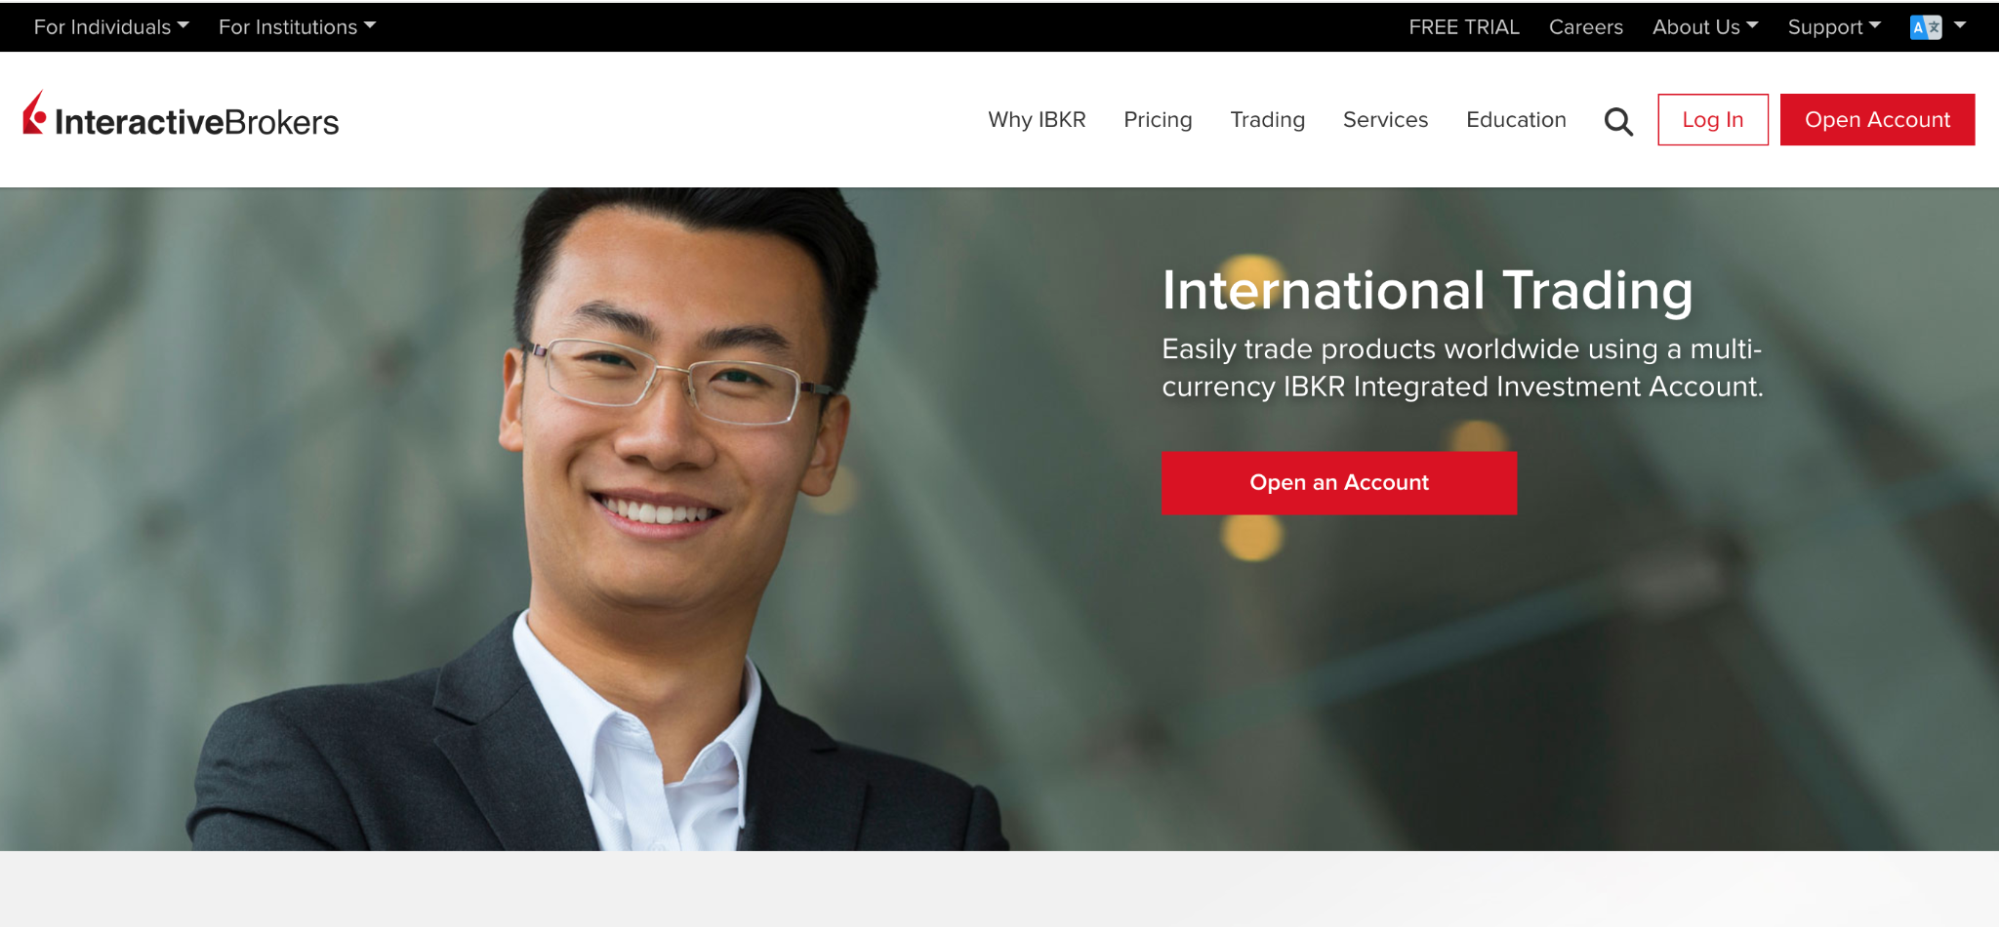 Interactive Brokers official website